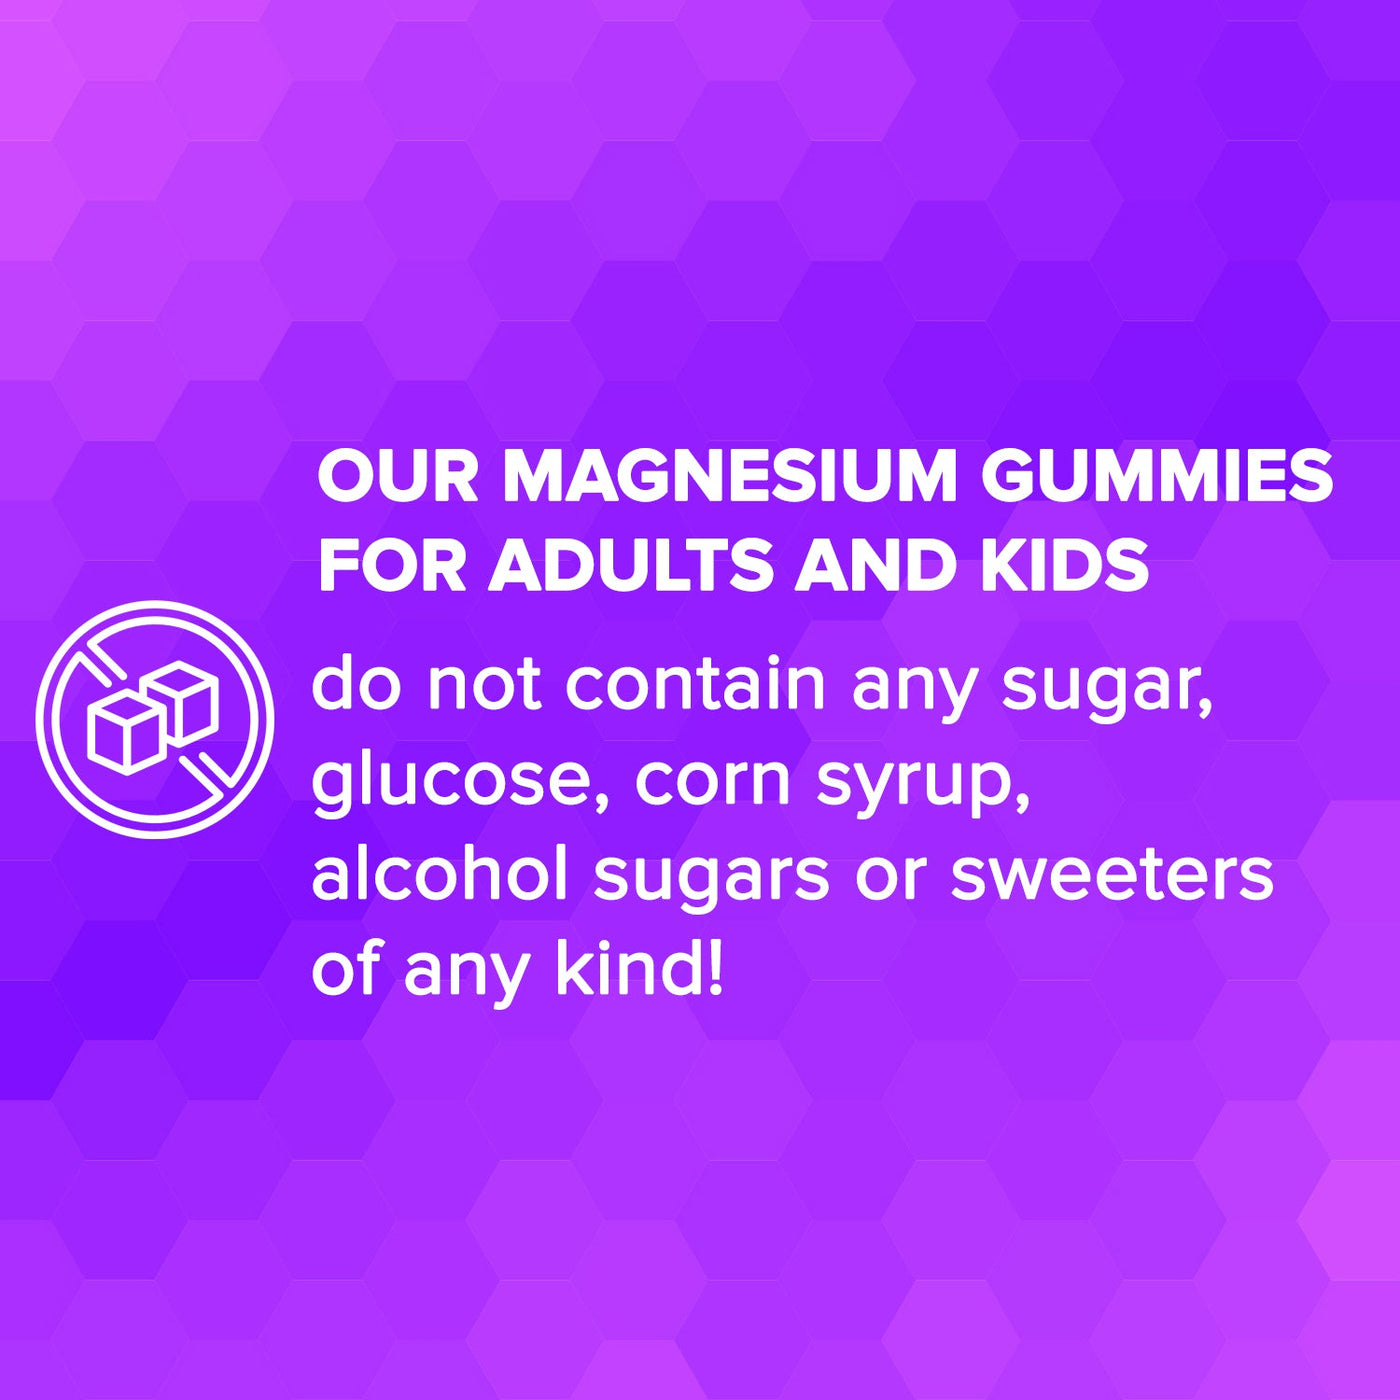 Magnesium Gummies